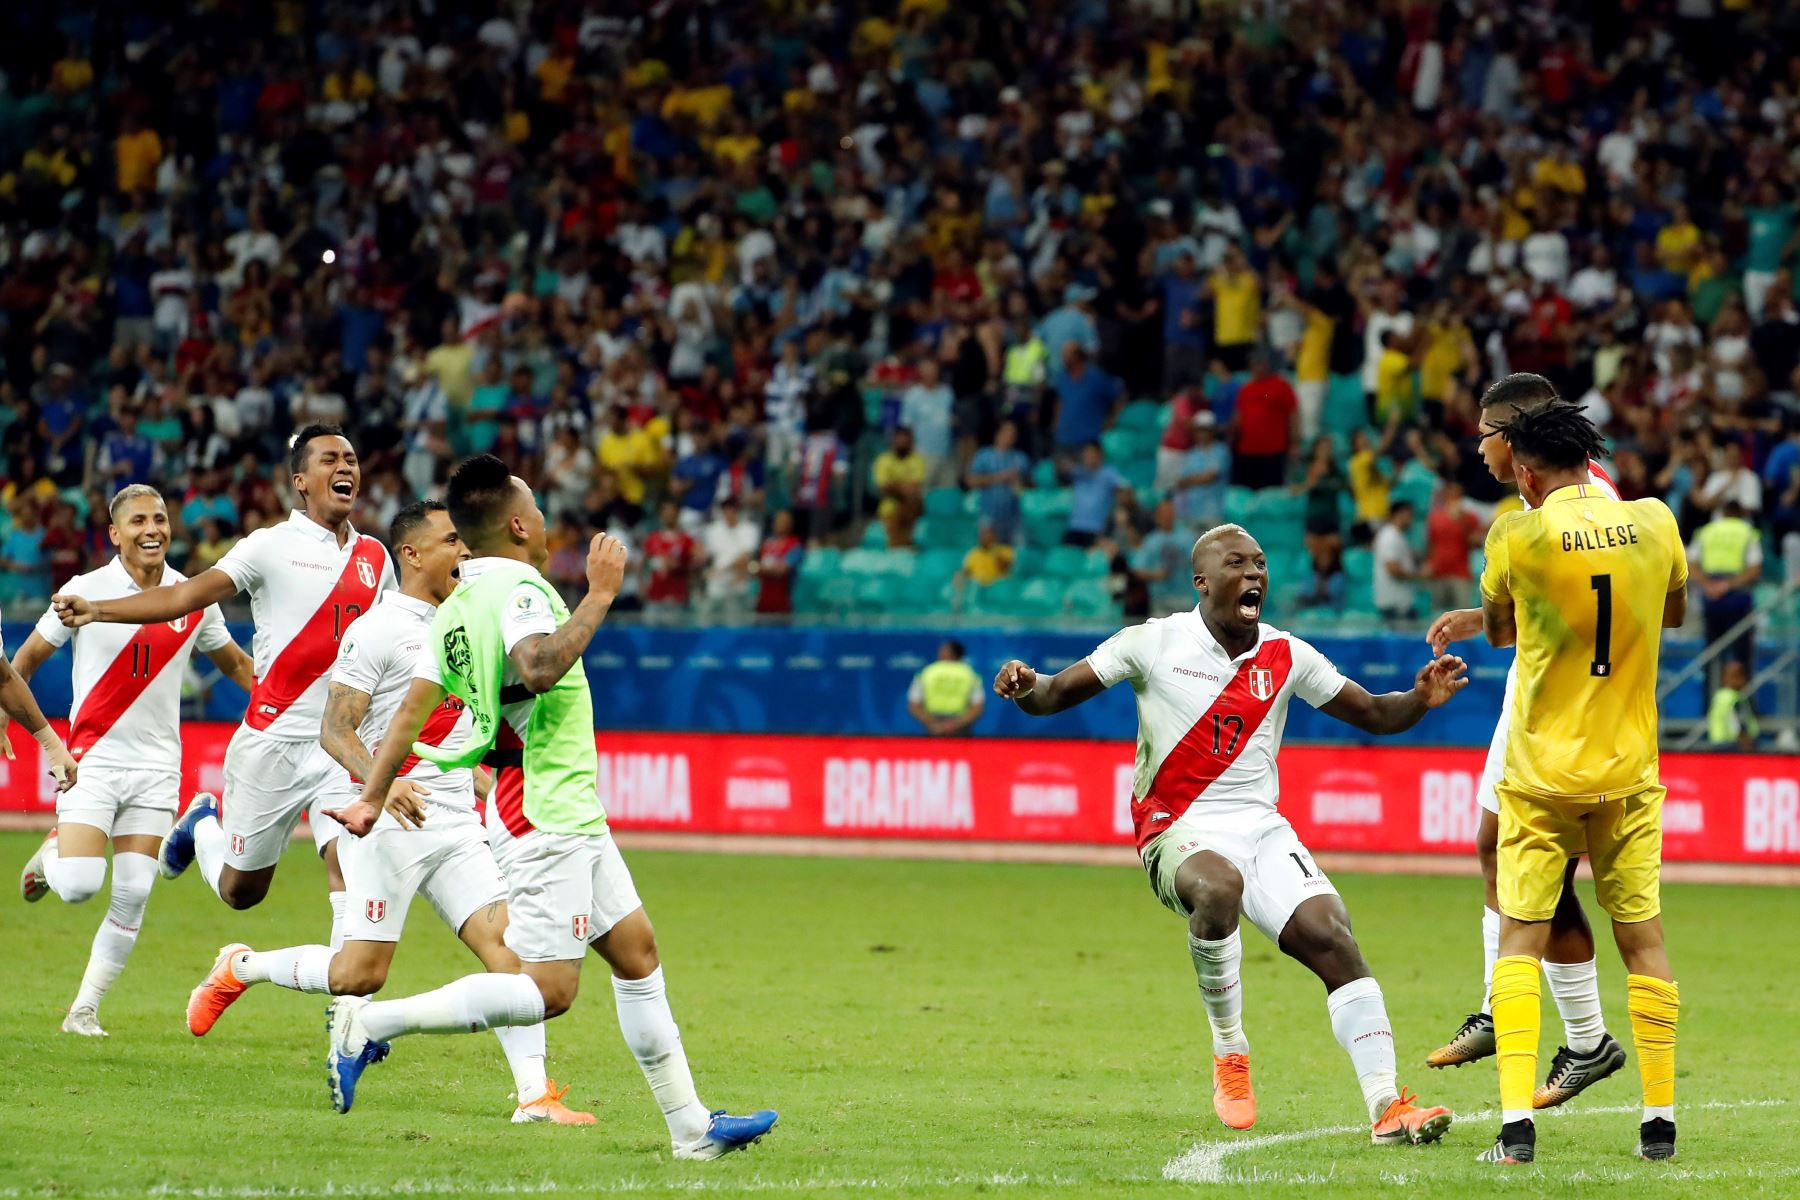 Jugadores de Perú celebran al ganar en la serie de penaltis, durante el partido Uruguay-Perú de cuartos de final de la Copa América de Fútbol 2019, en el Estadio Arena Fonte Nova de Salvador, Brasil.Foto.EFE